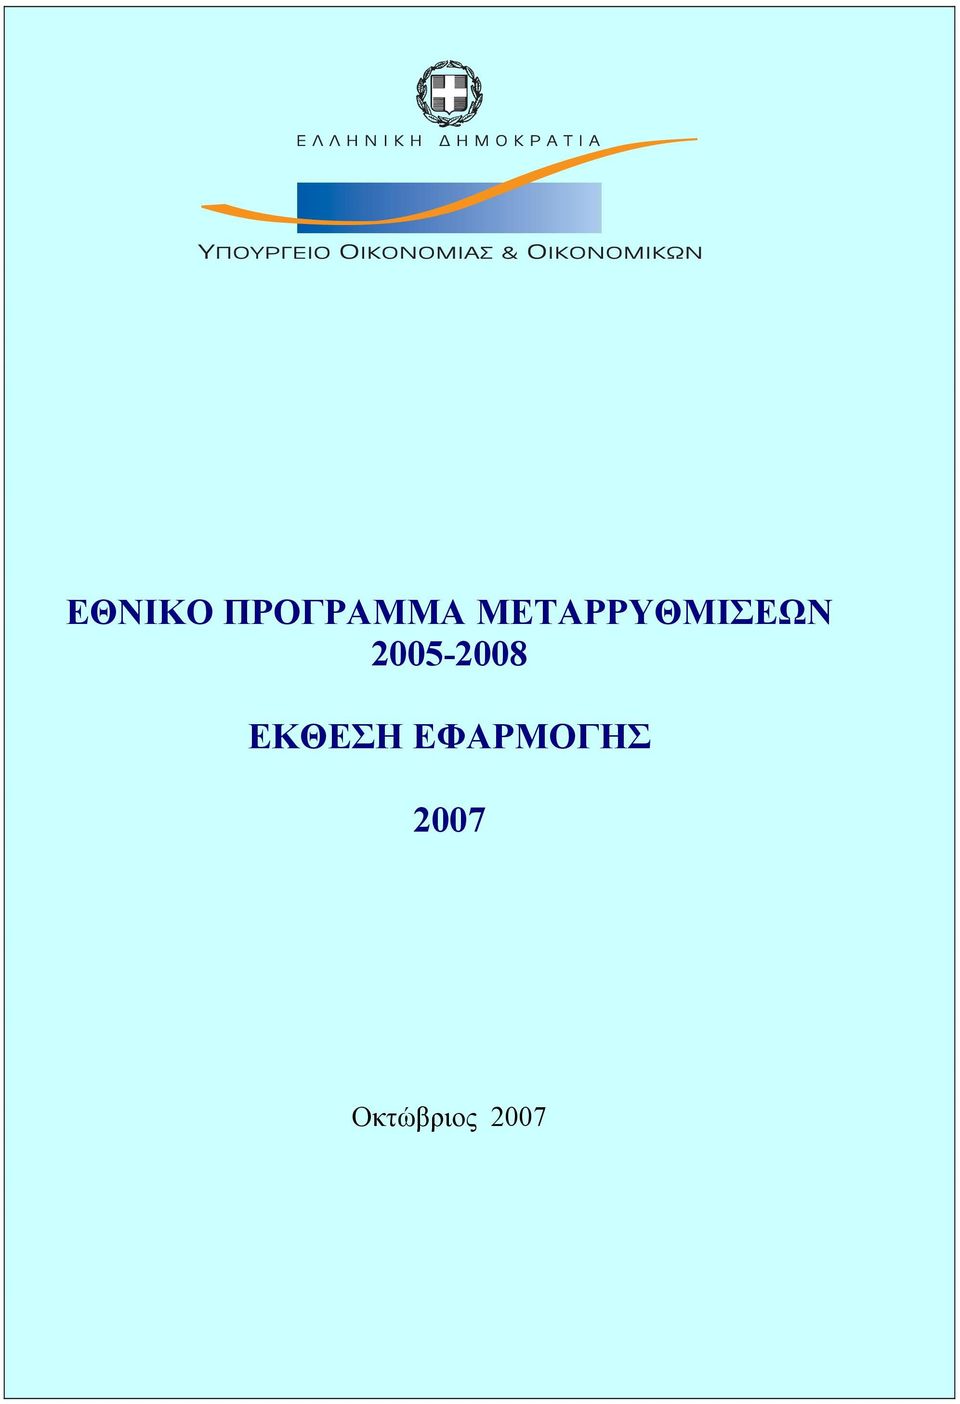 2005-2008 ΕΚΘΕΣΗ